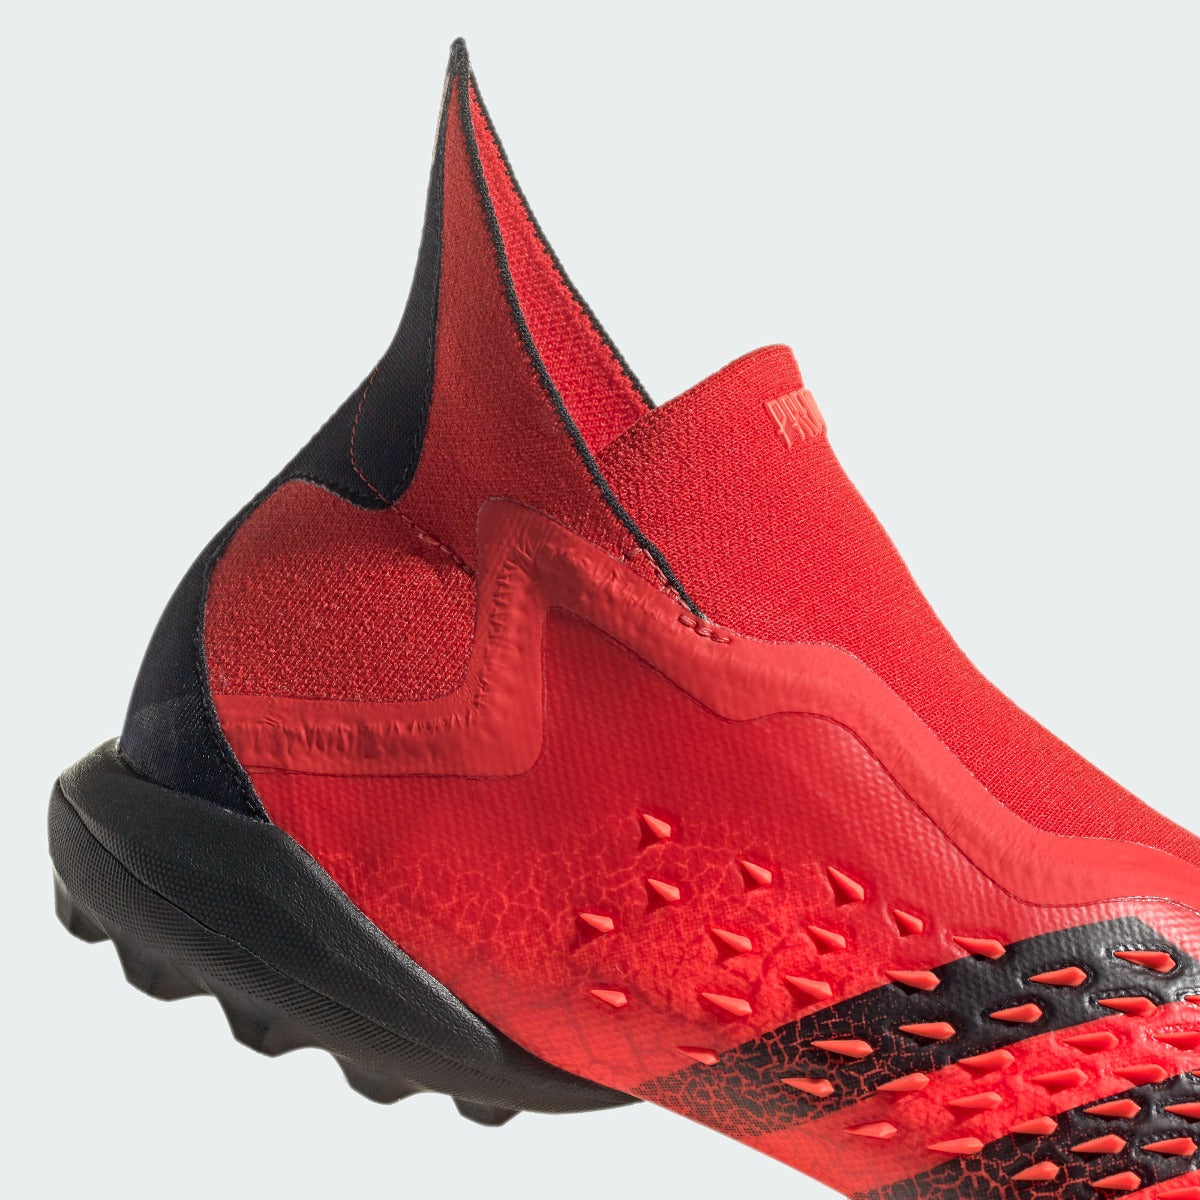 Adidas Predator Freak + TF - Red-Black (Detail 3)